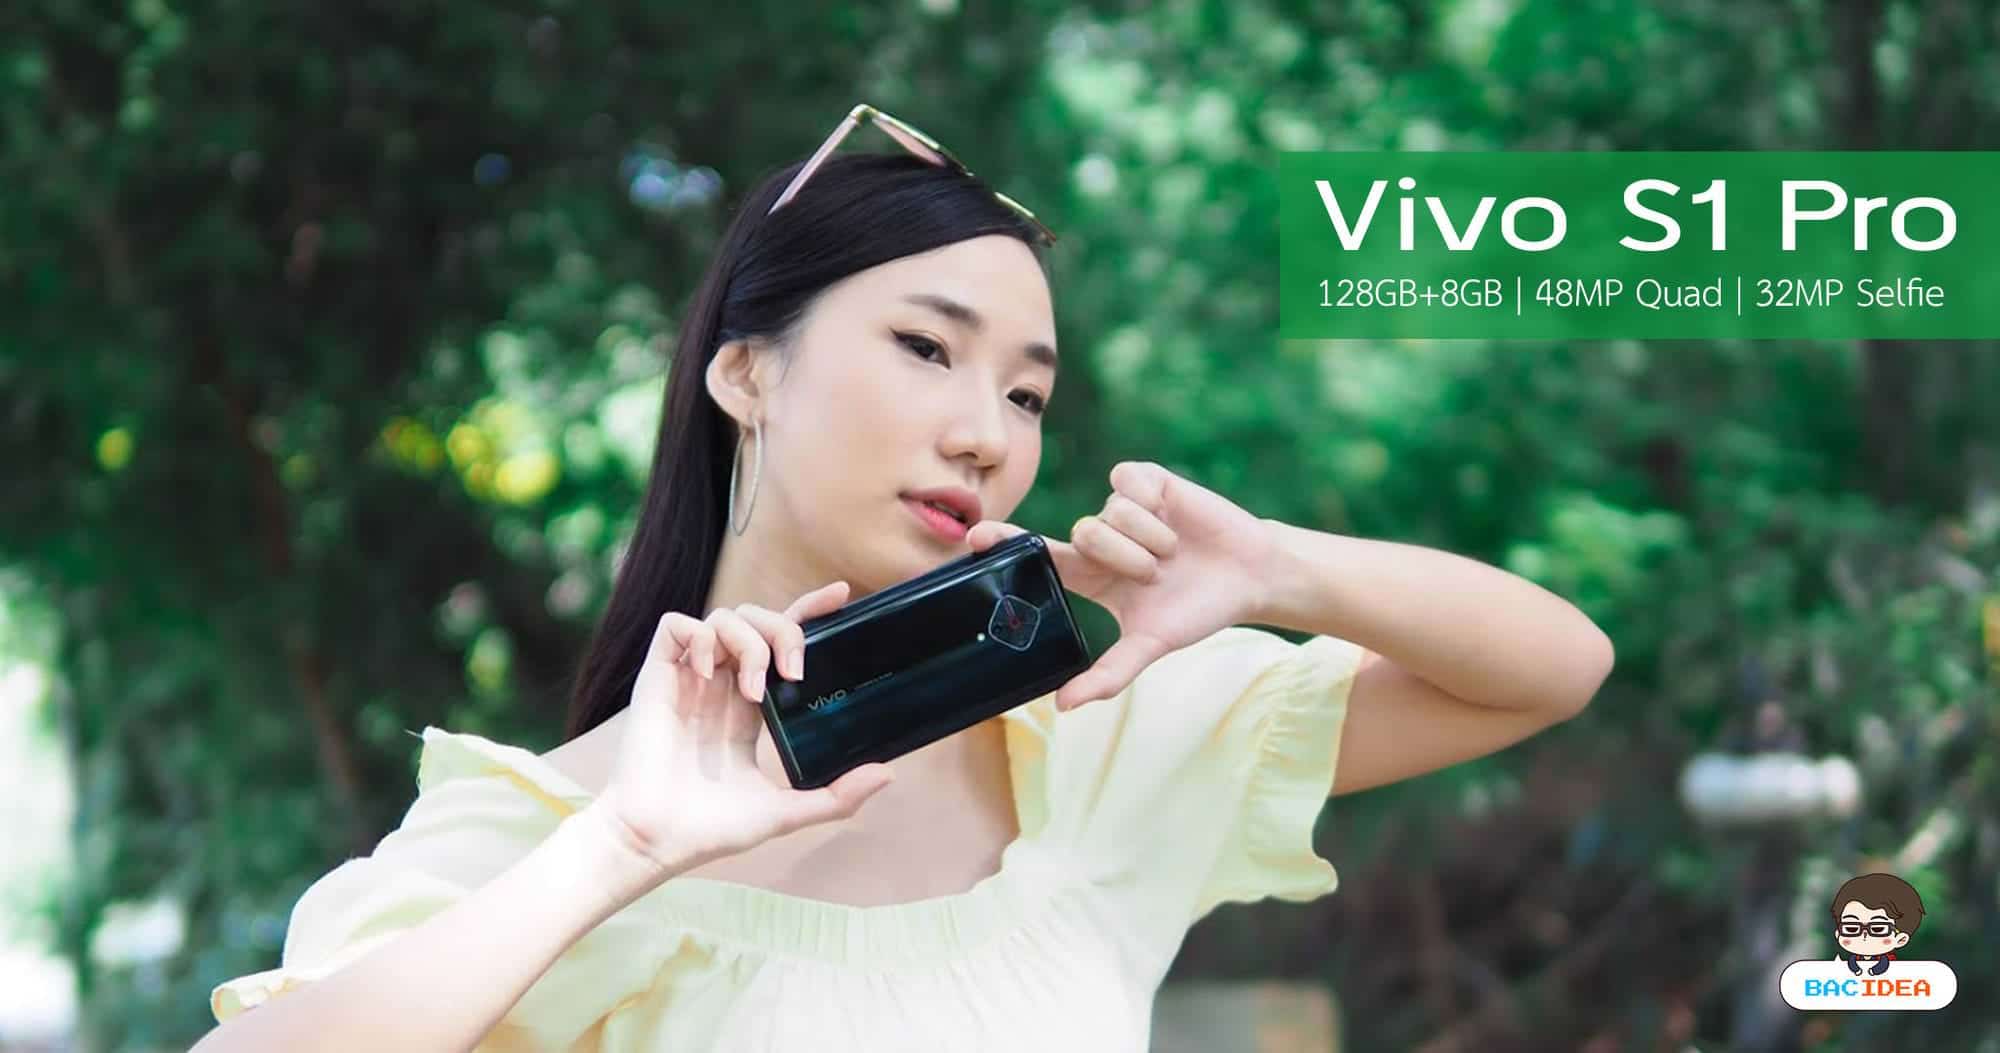 รีวิว Vivo S1 Pro | กล้องหน้า 32MP กล้องหลัง 48MP พร้อมดีไซน์โดดเด่นไม่เหมือนใคร เป๊ะ ปัง อลังการทุกมุม 1